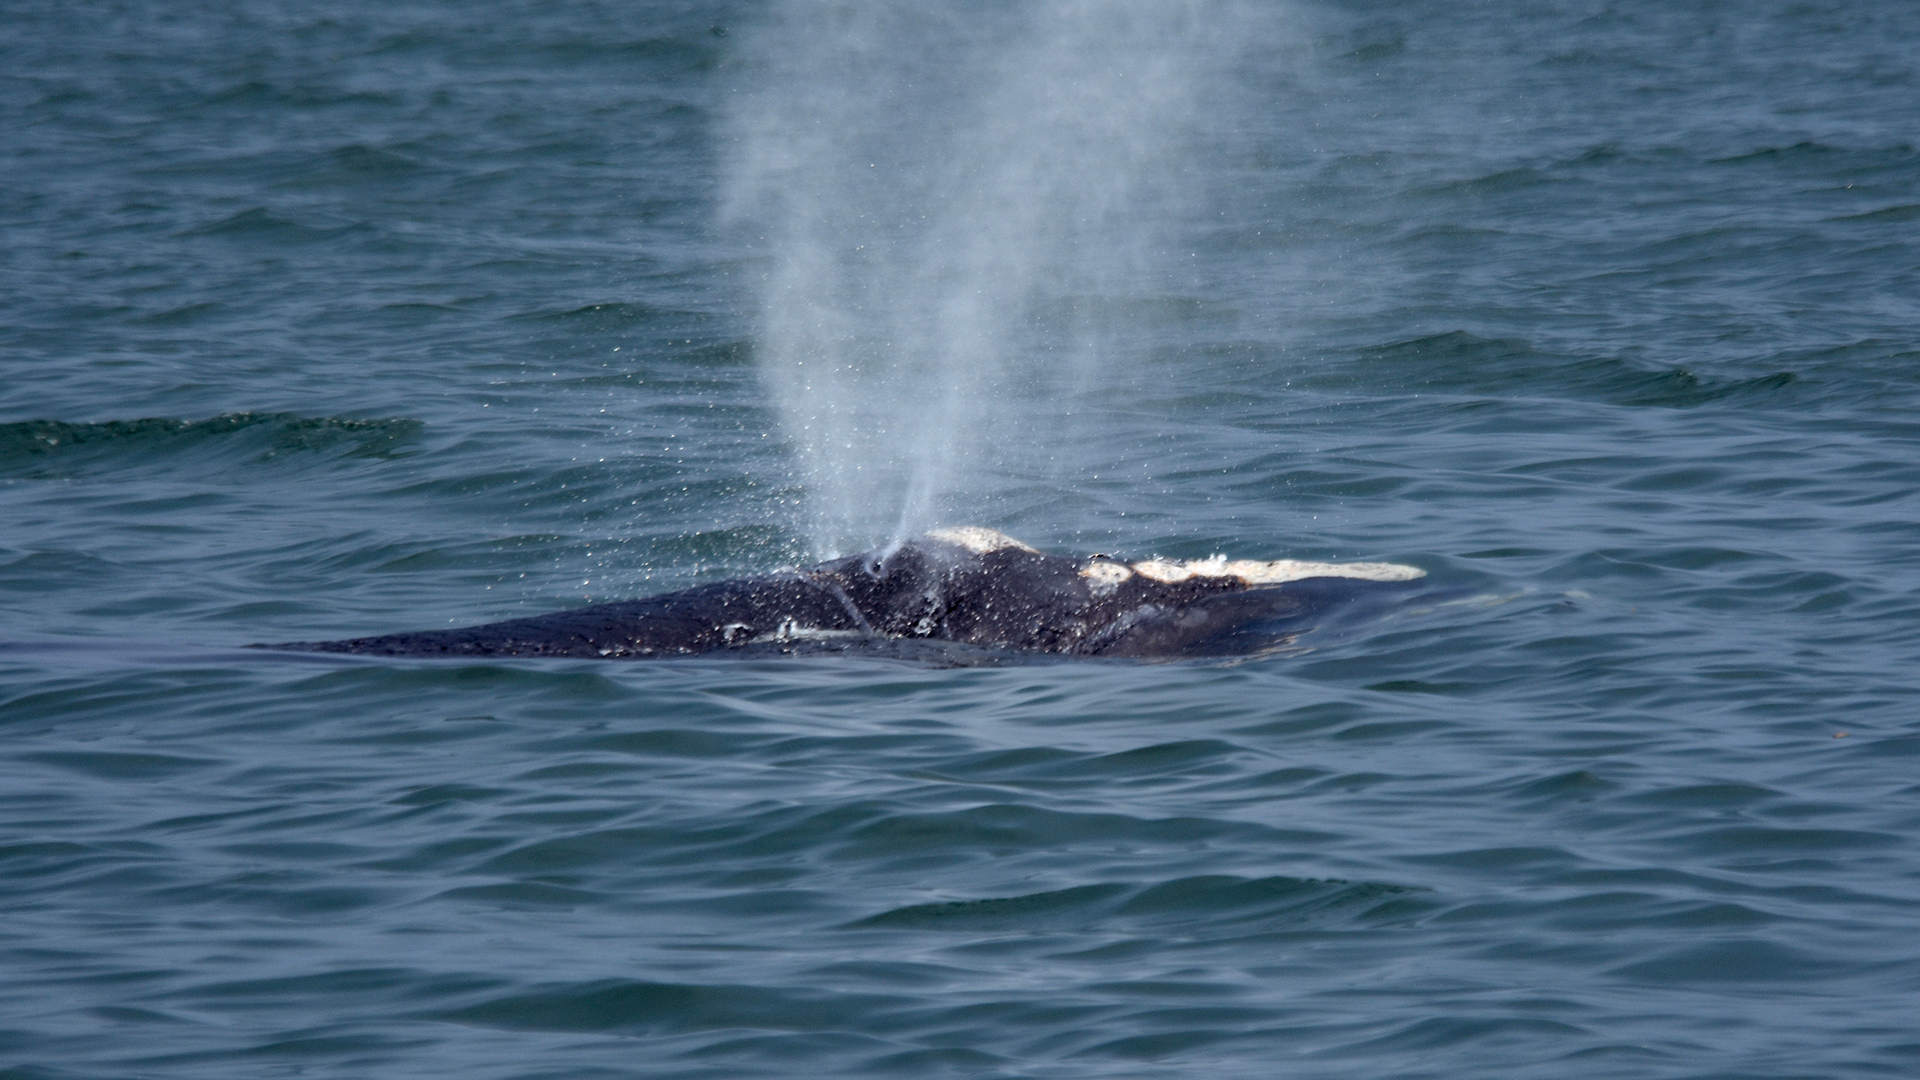 On voit le dessus de la tête de la baleine noire et son souffle en forme de V.